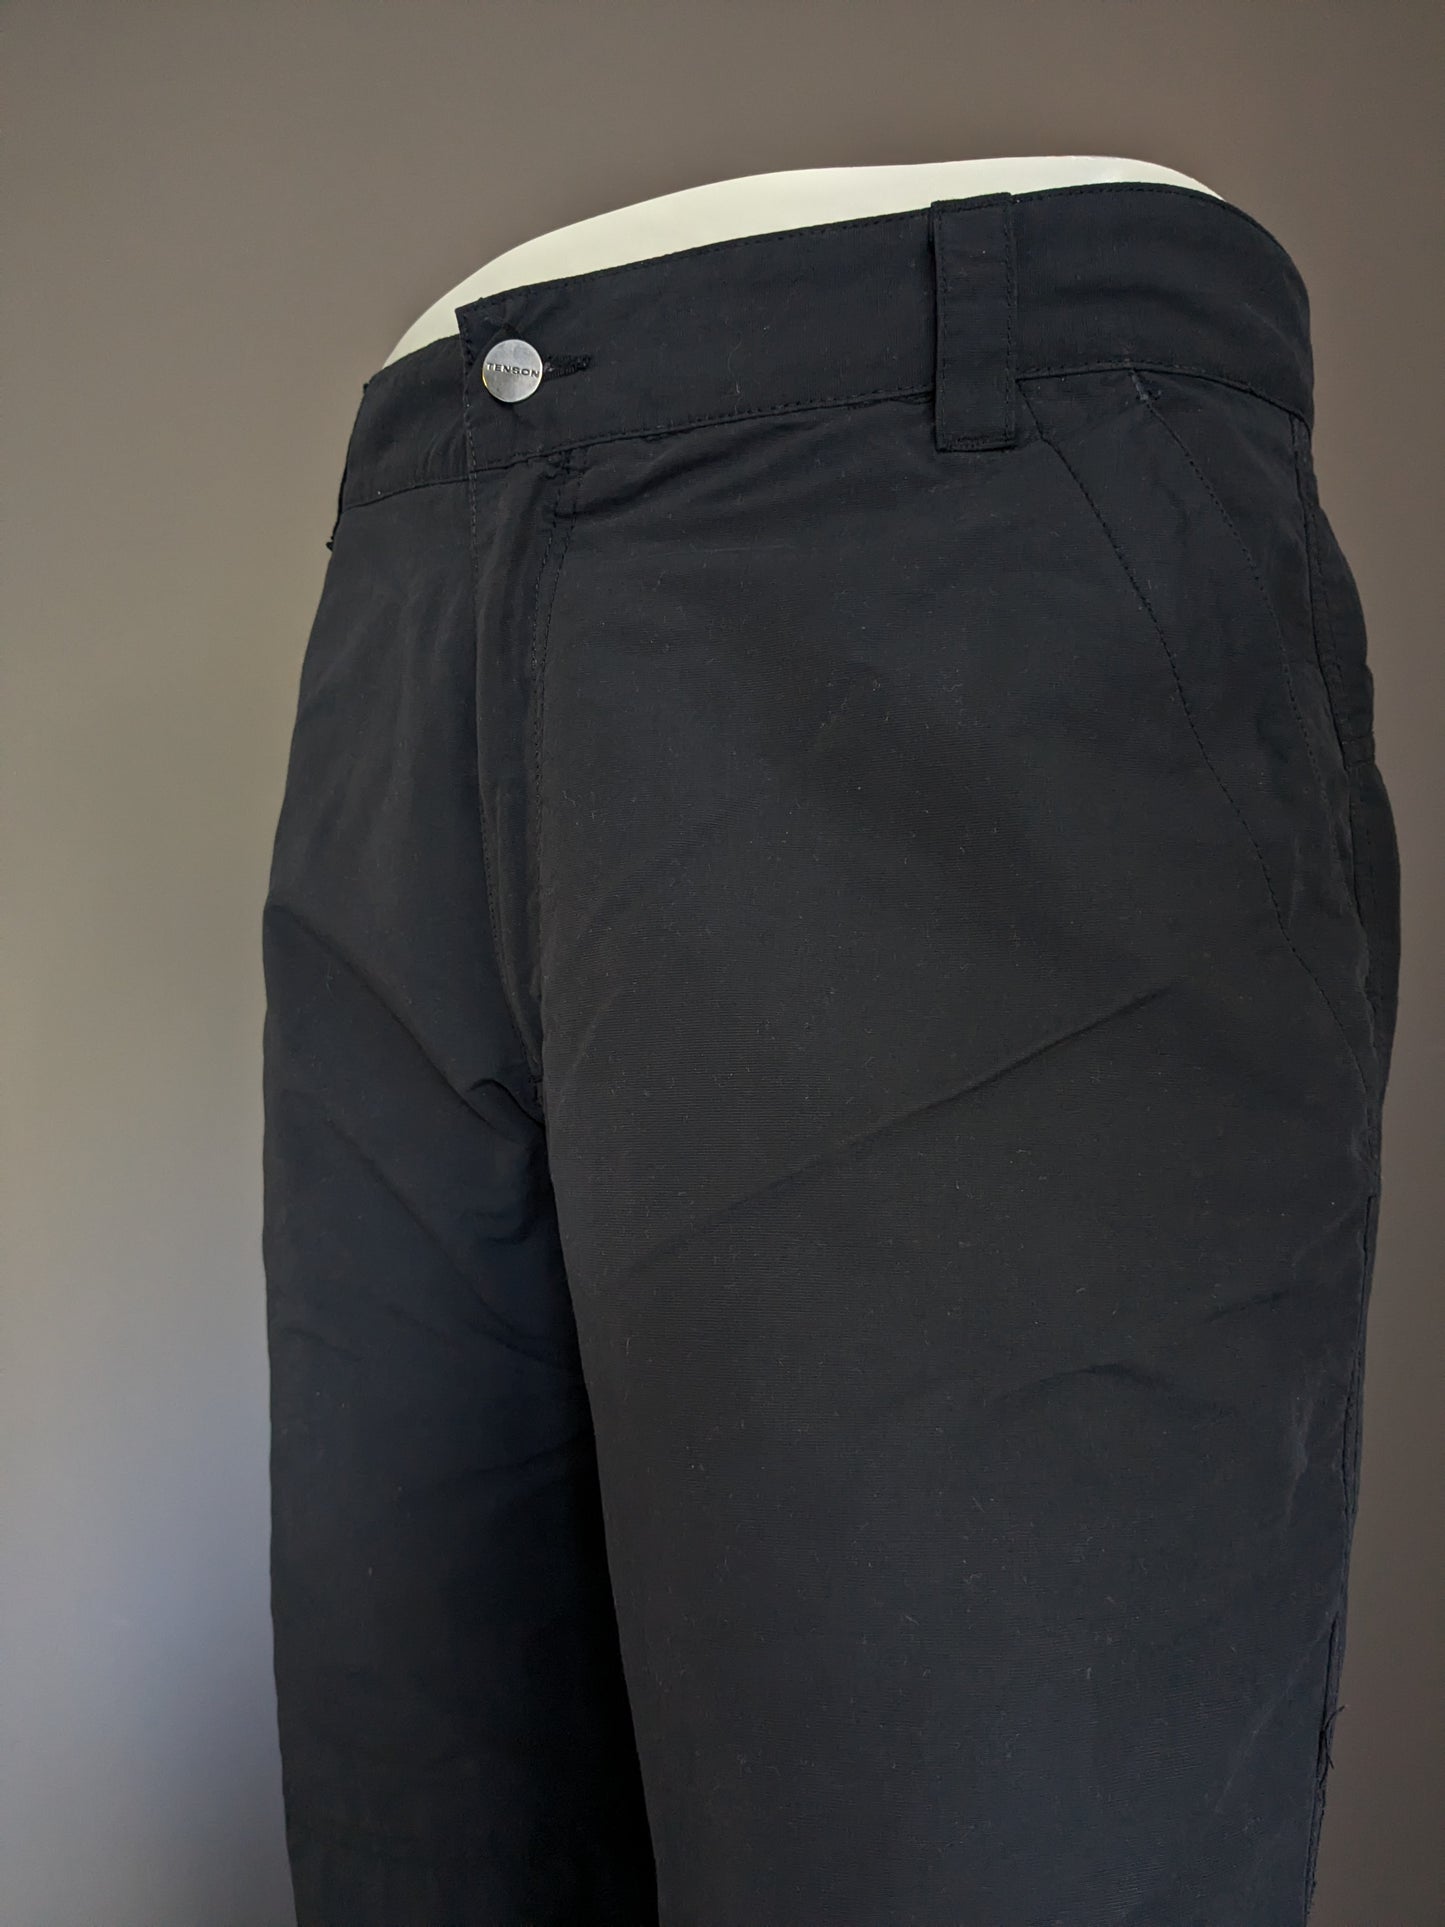 Pantalones largos al aire libre de tenson. Un revestimiento suave y cálido. Negro. Tamaño 54.l.